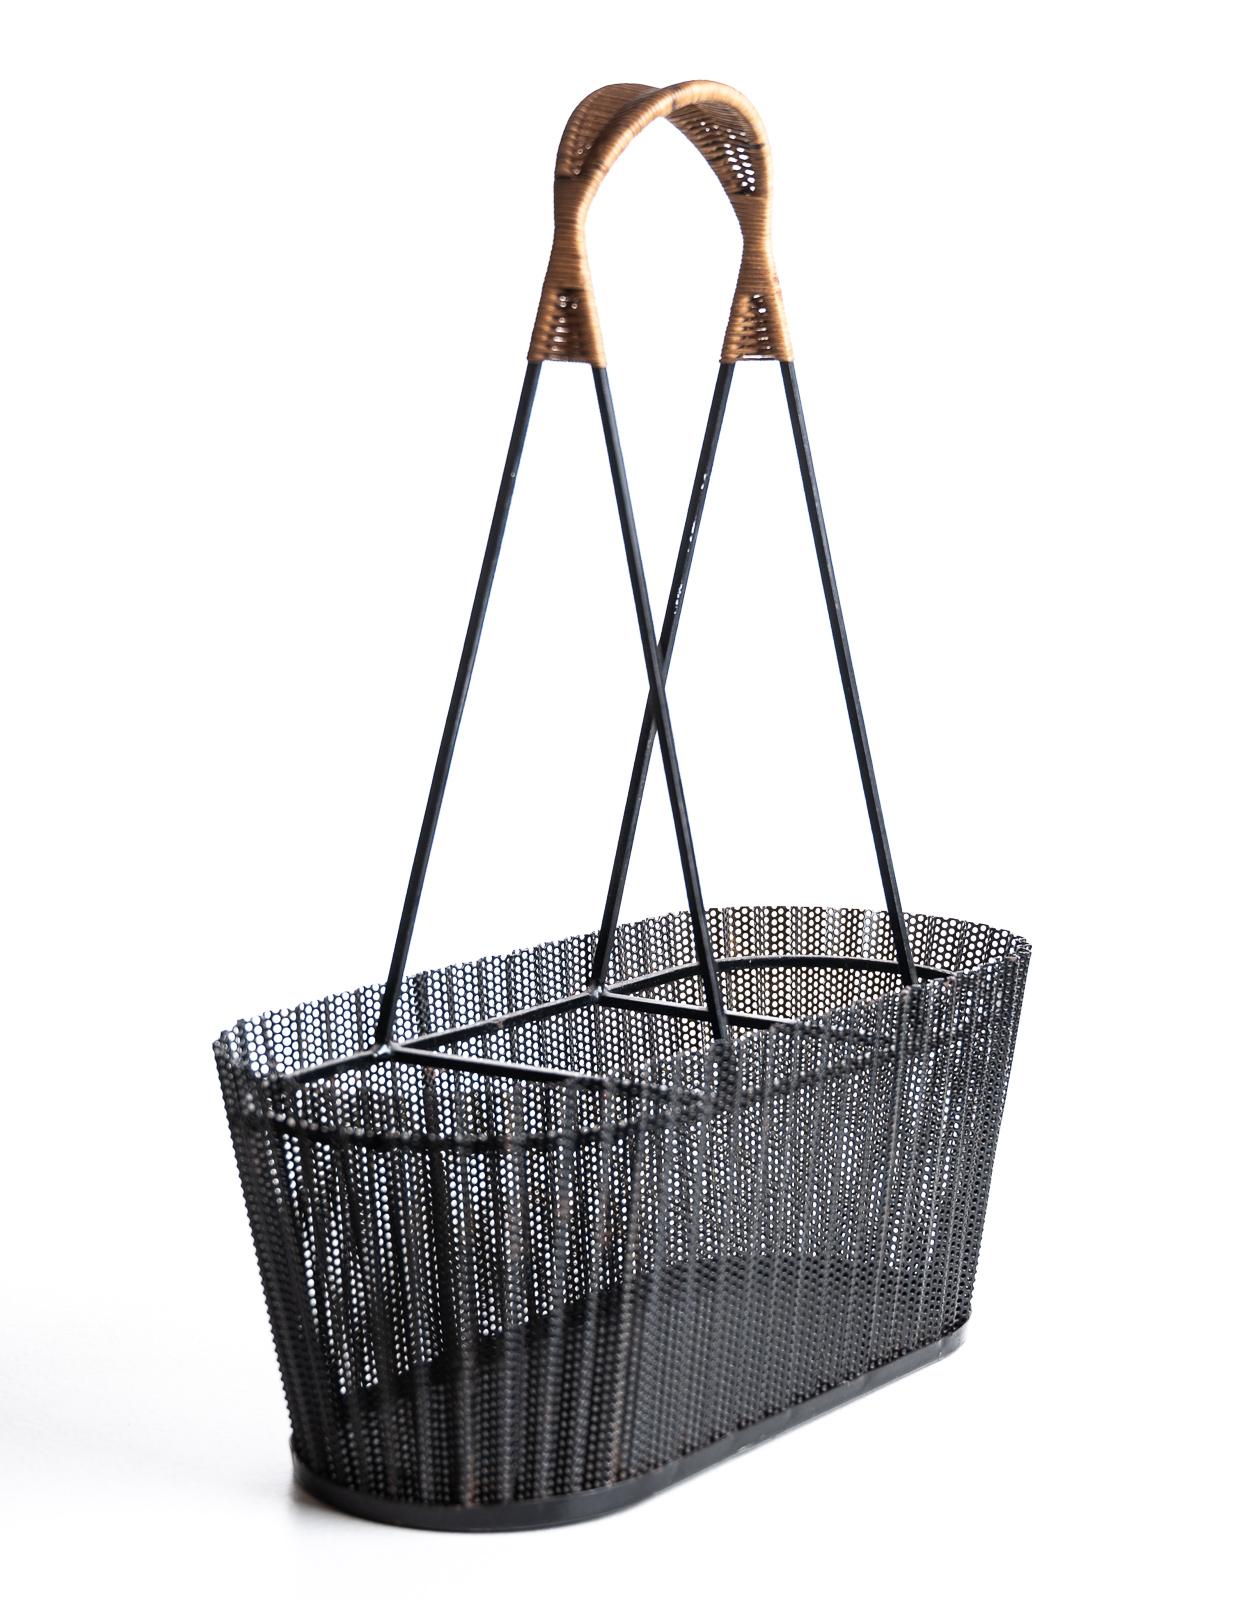 Mid-Century Modern Rare Metal Basket with Wicker Handles by Mathieu Matégot